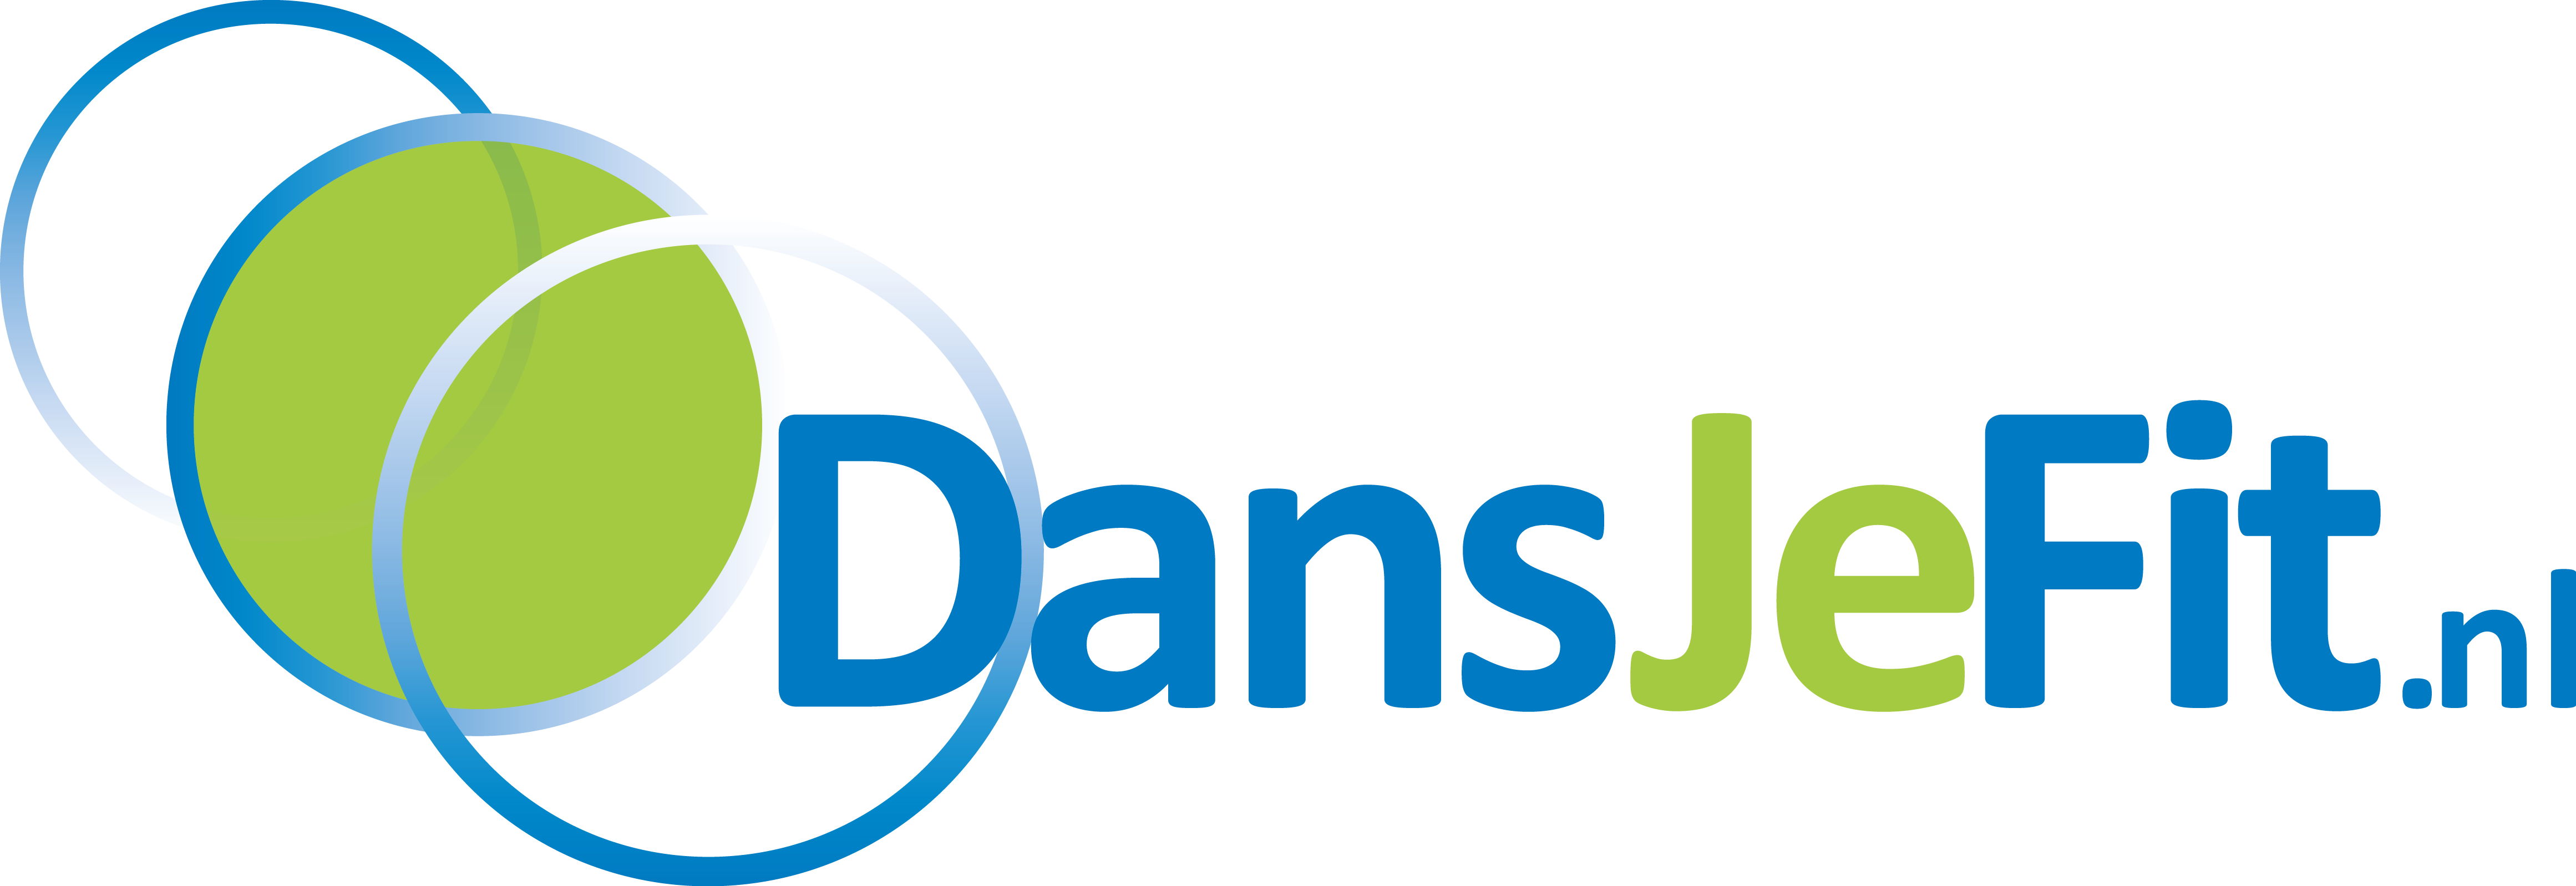 DansJeFfit_logo_FC